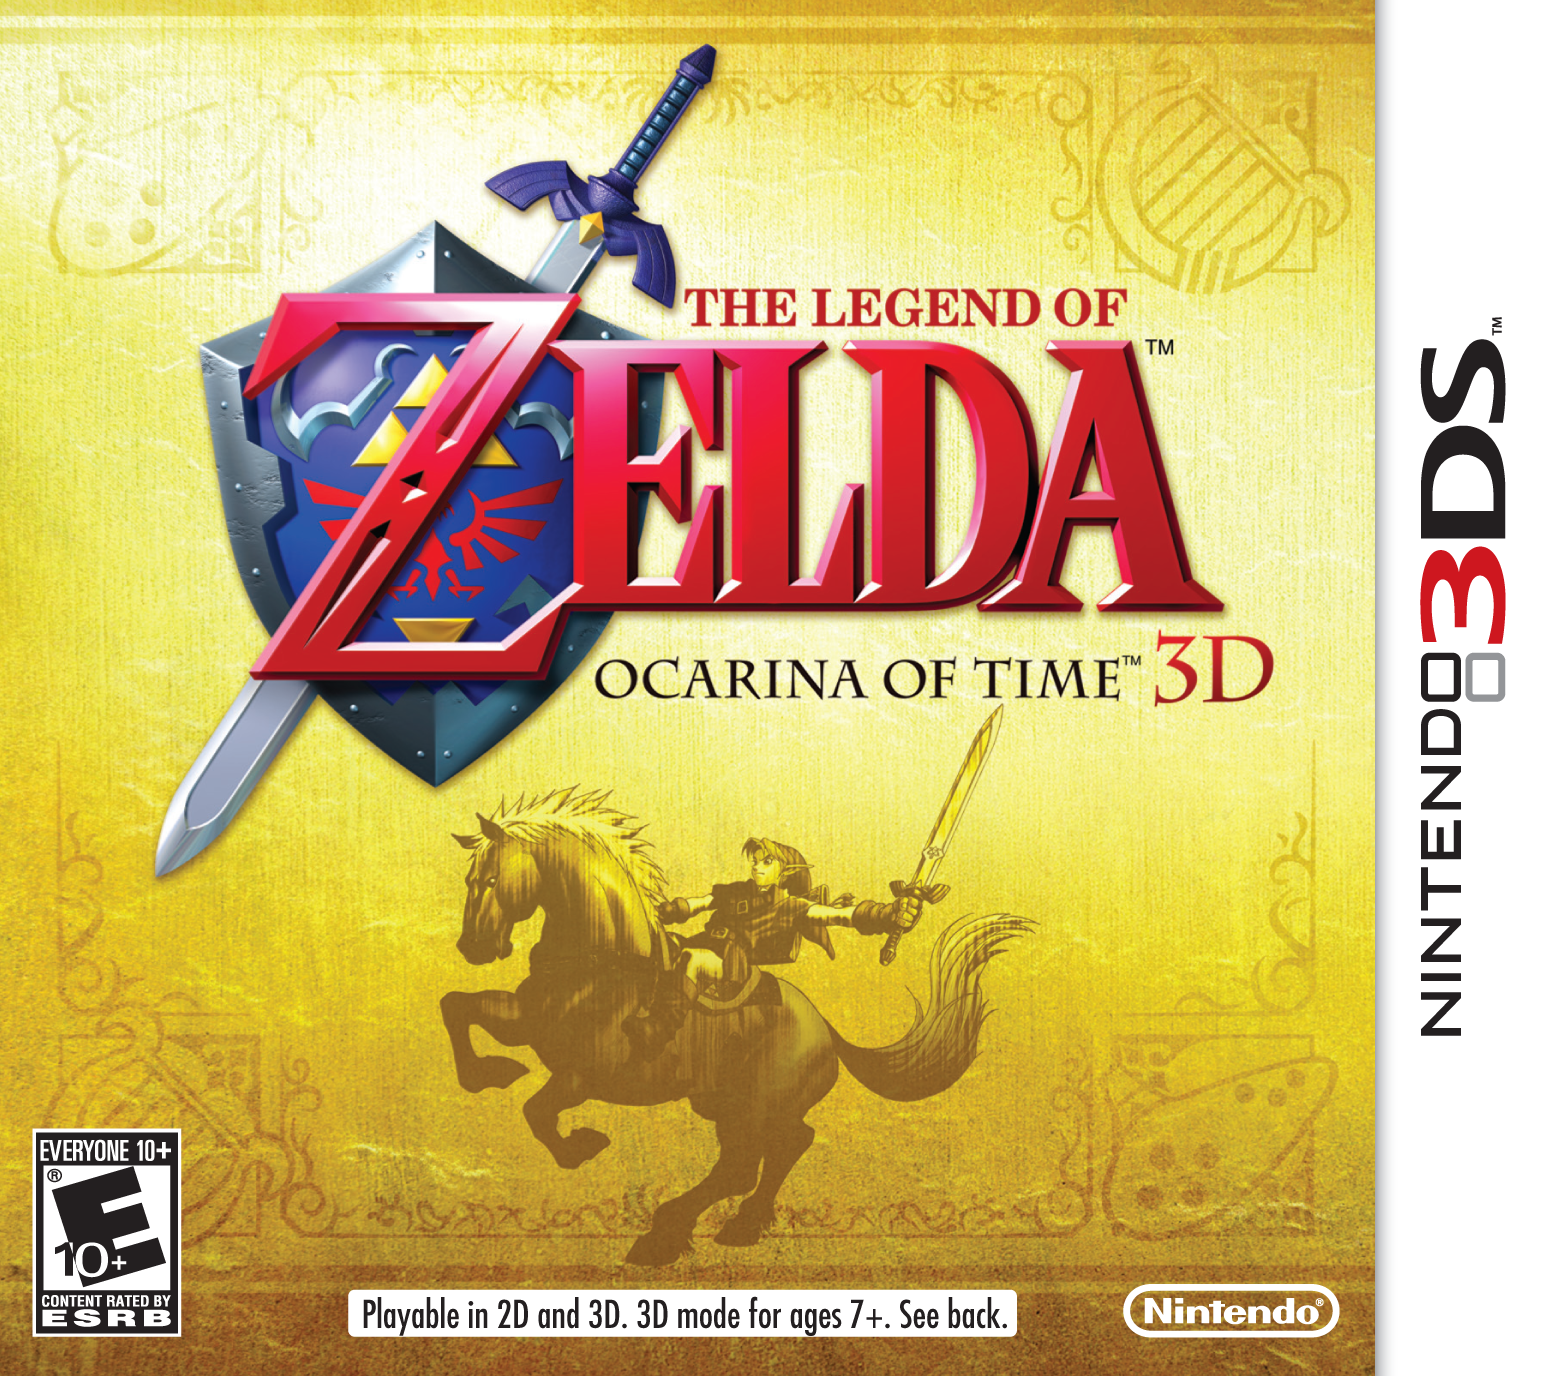 Legend Of Zelda, The - Ocarina Of Time - Master Quest ROM - N64 Download -  Emulator Games